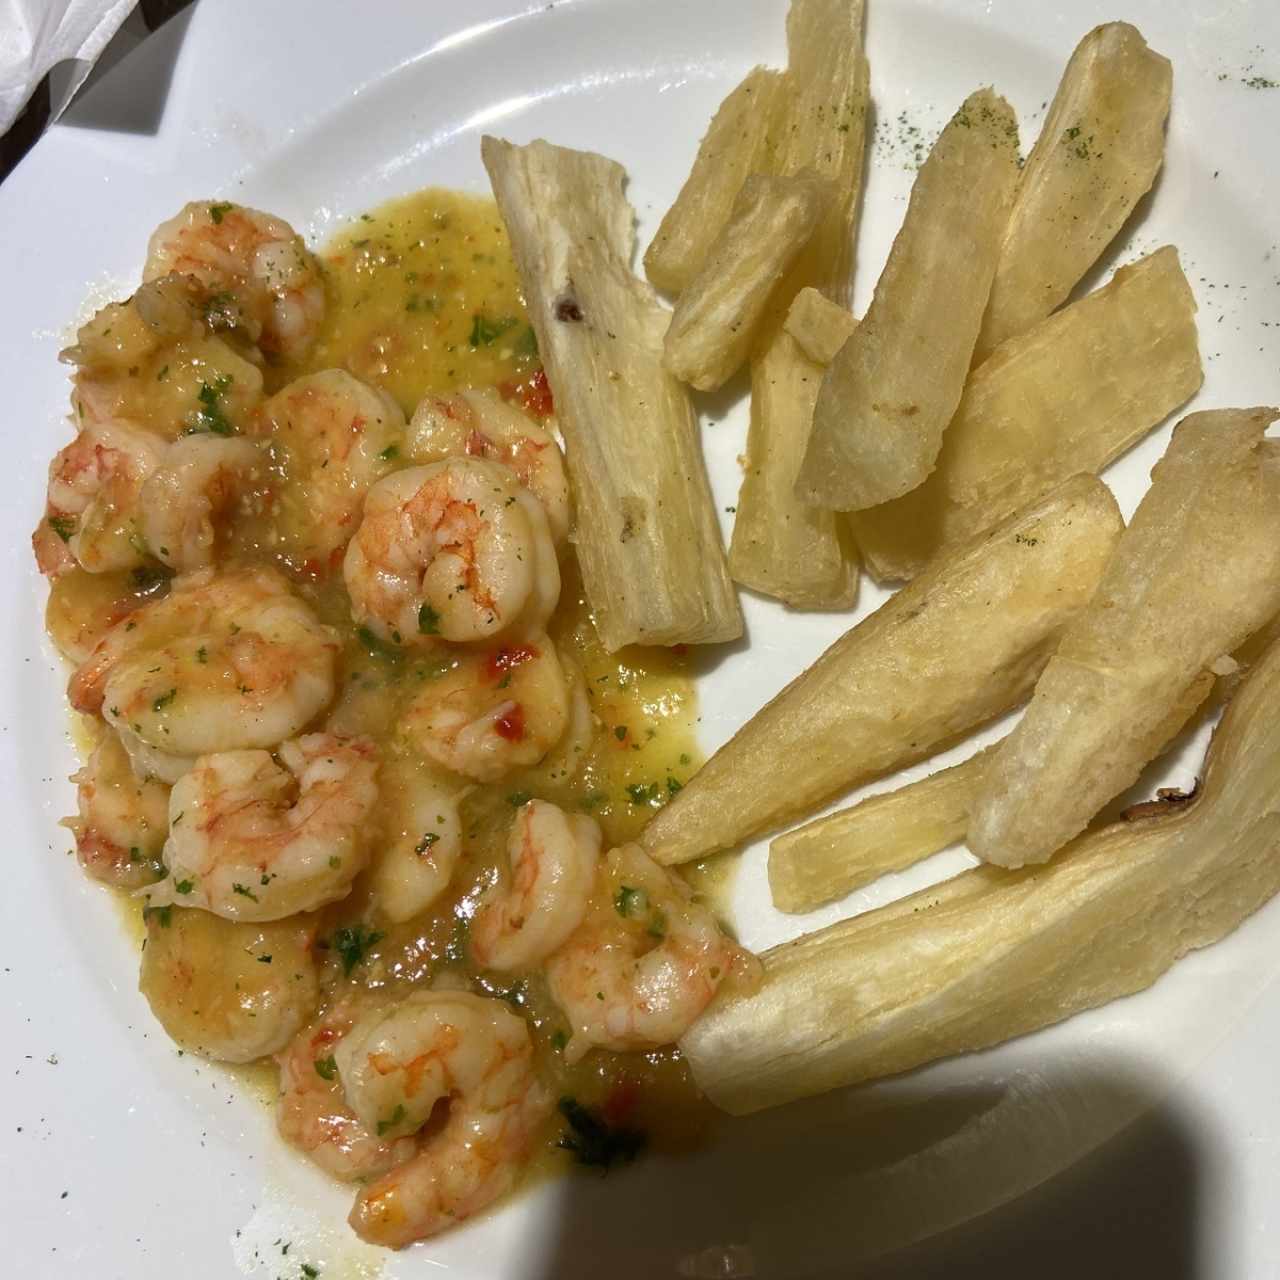 Camarones/Shrimps